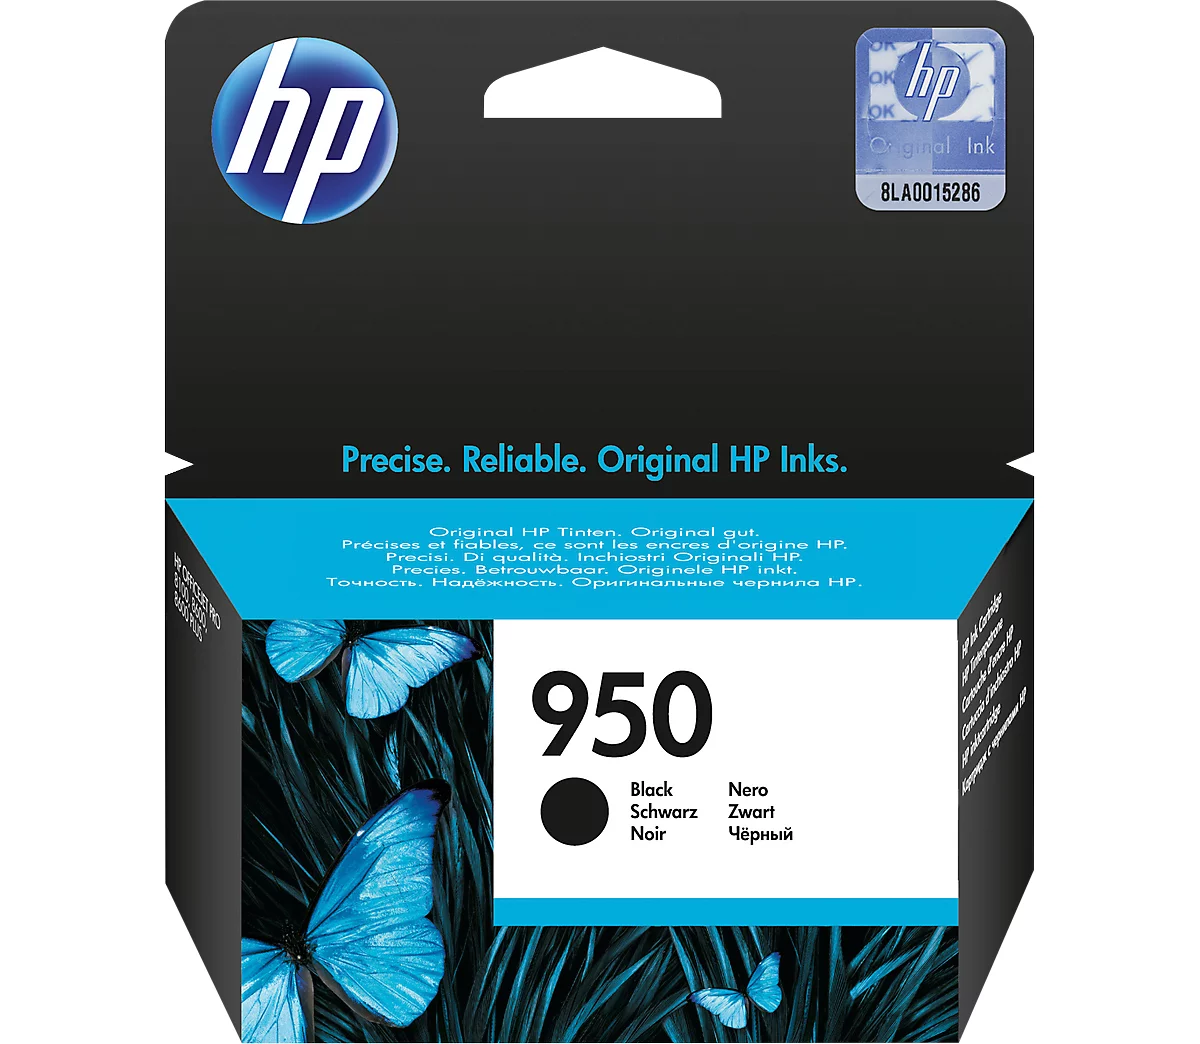 Cartouche d'imprimante n° 62 N9J71AE HP, noir + trois couleurs acheter à  prix avantageux